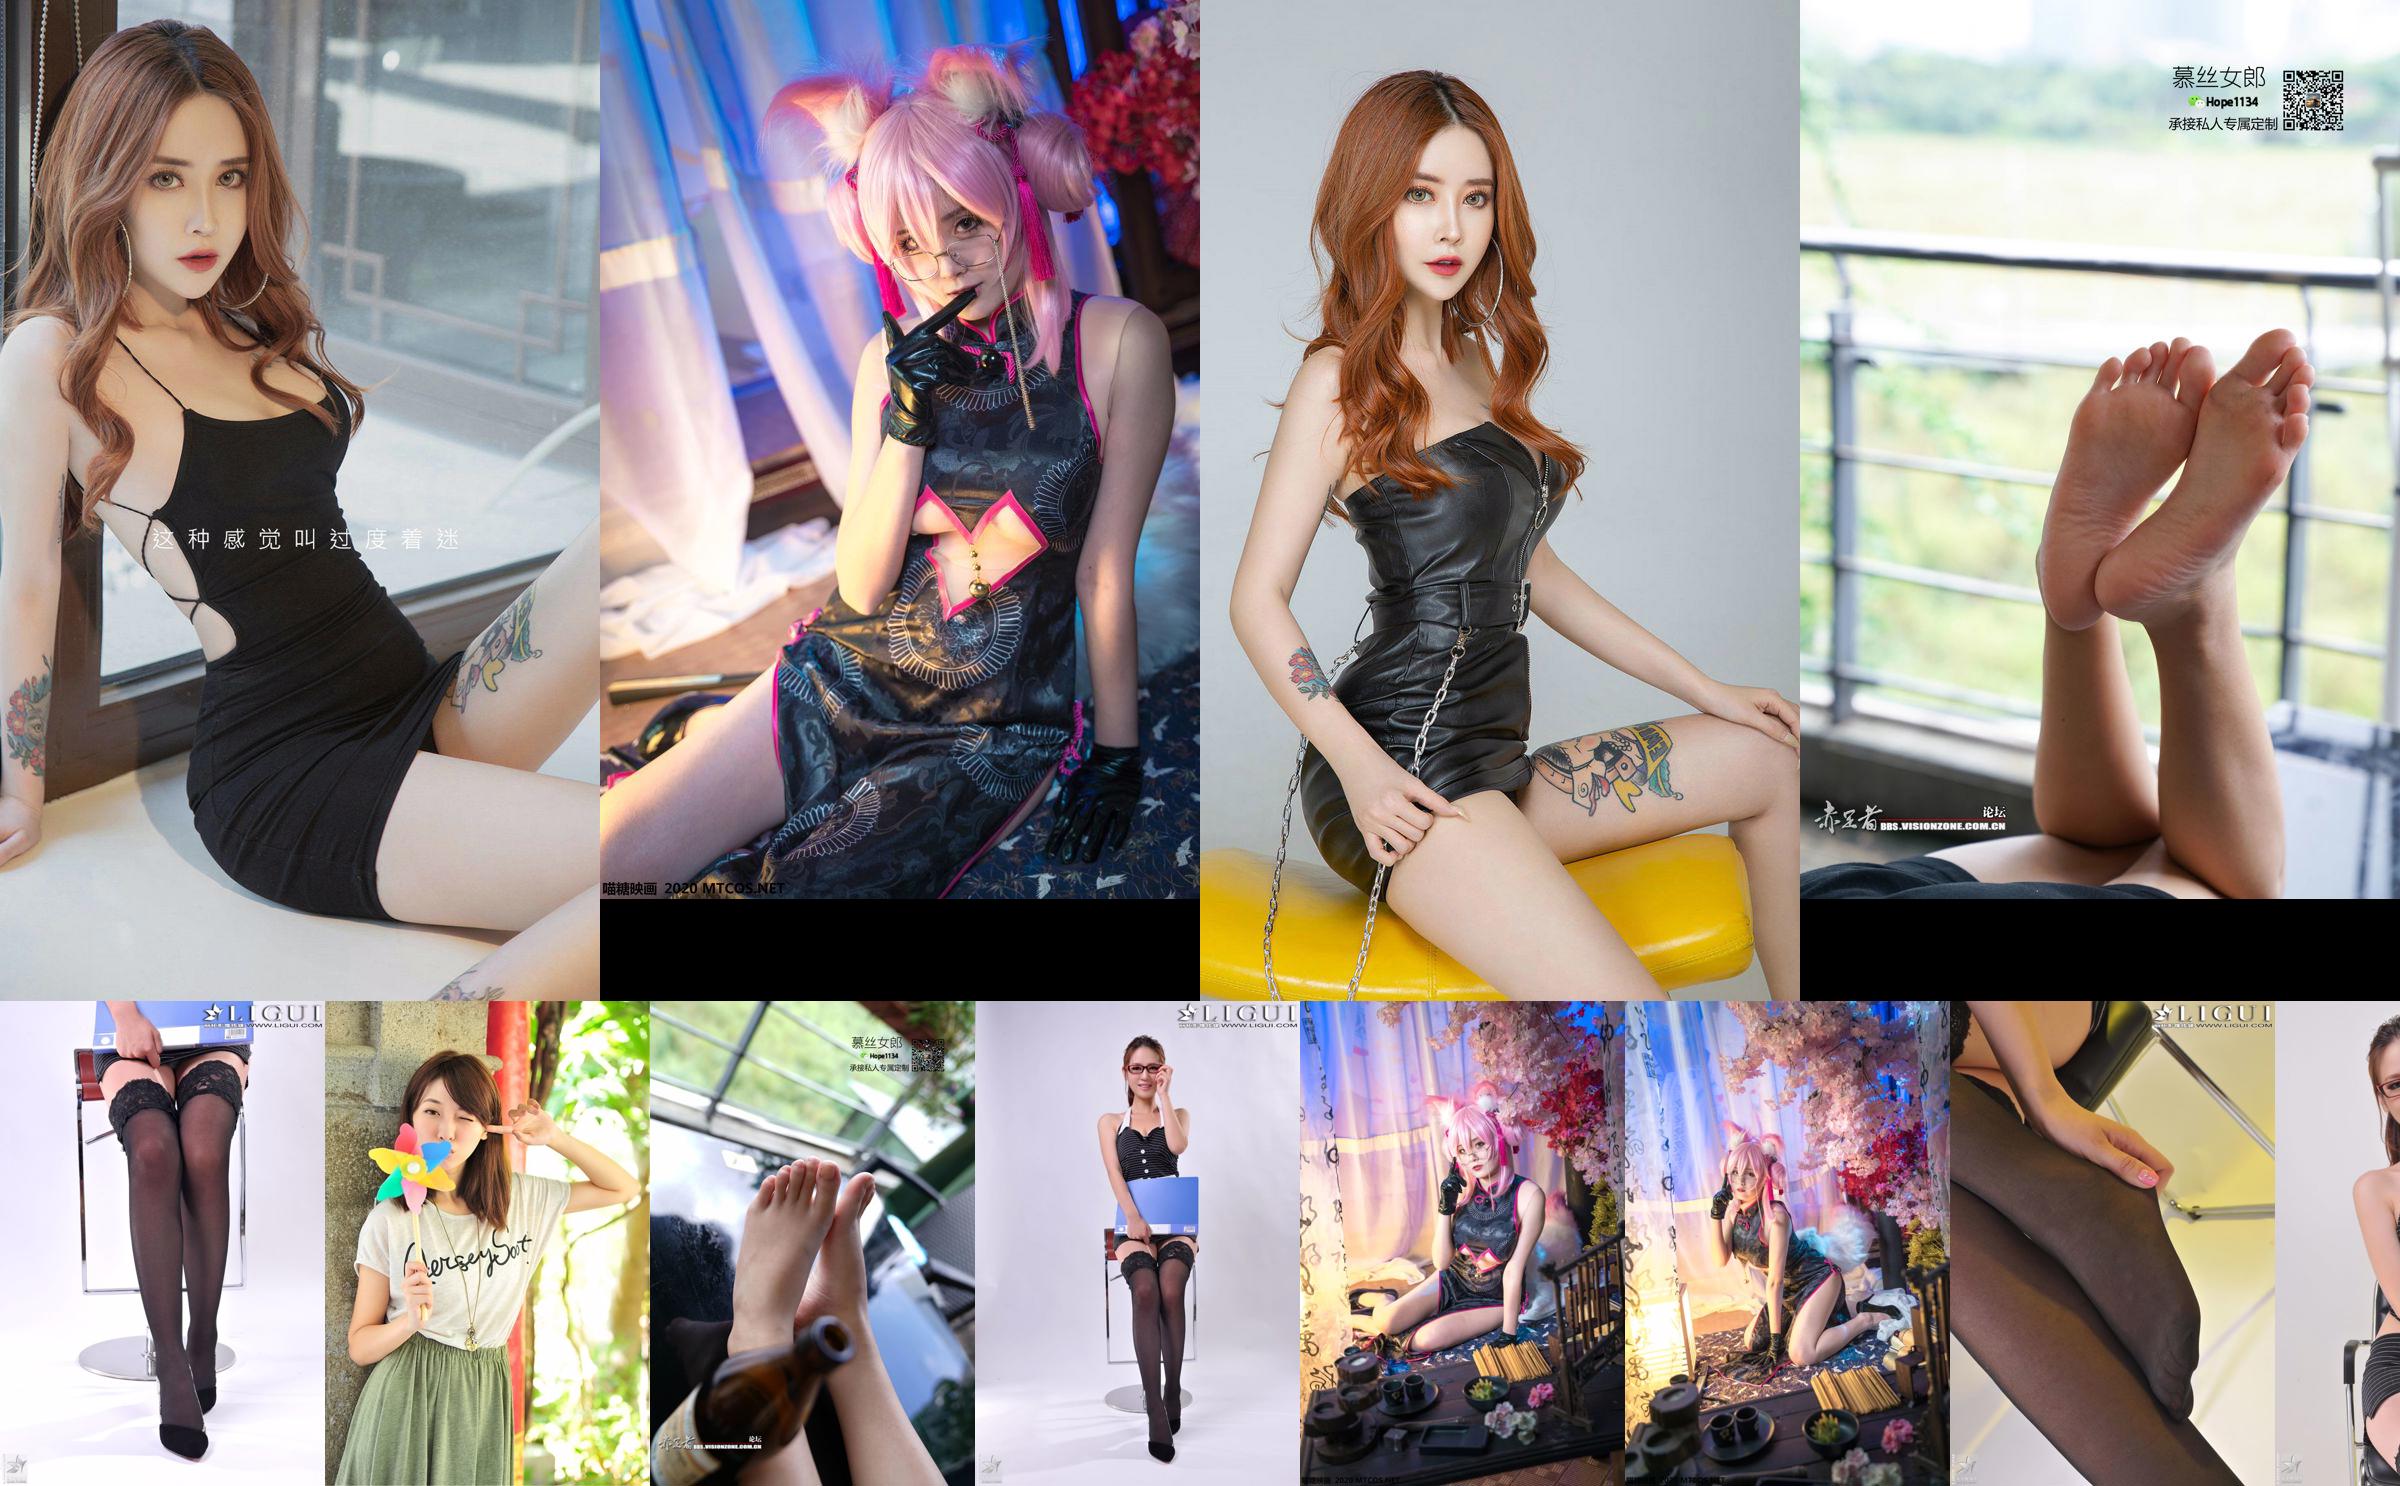 [丽柜贵足LiGui] Model Xiaoyu's "Professional Wear Glasses Girl" Complete Works No.cdca20 Page 7